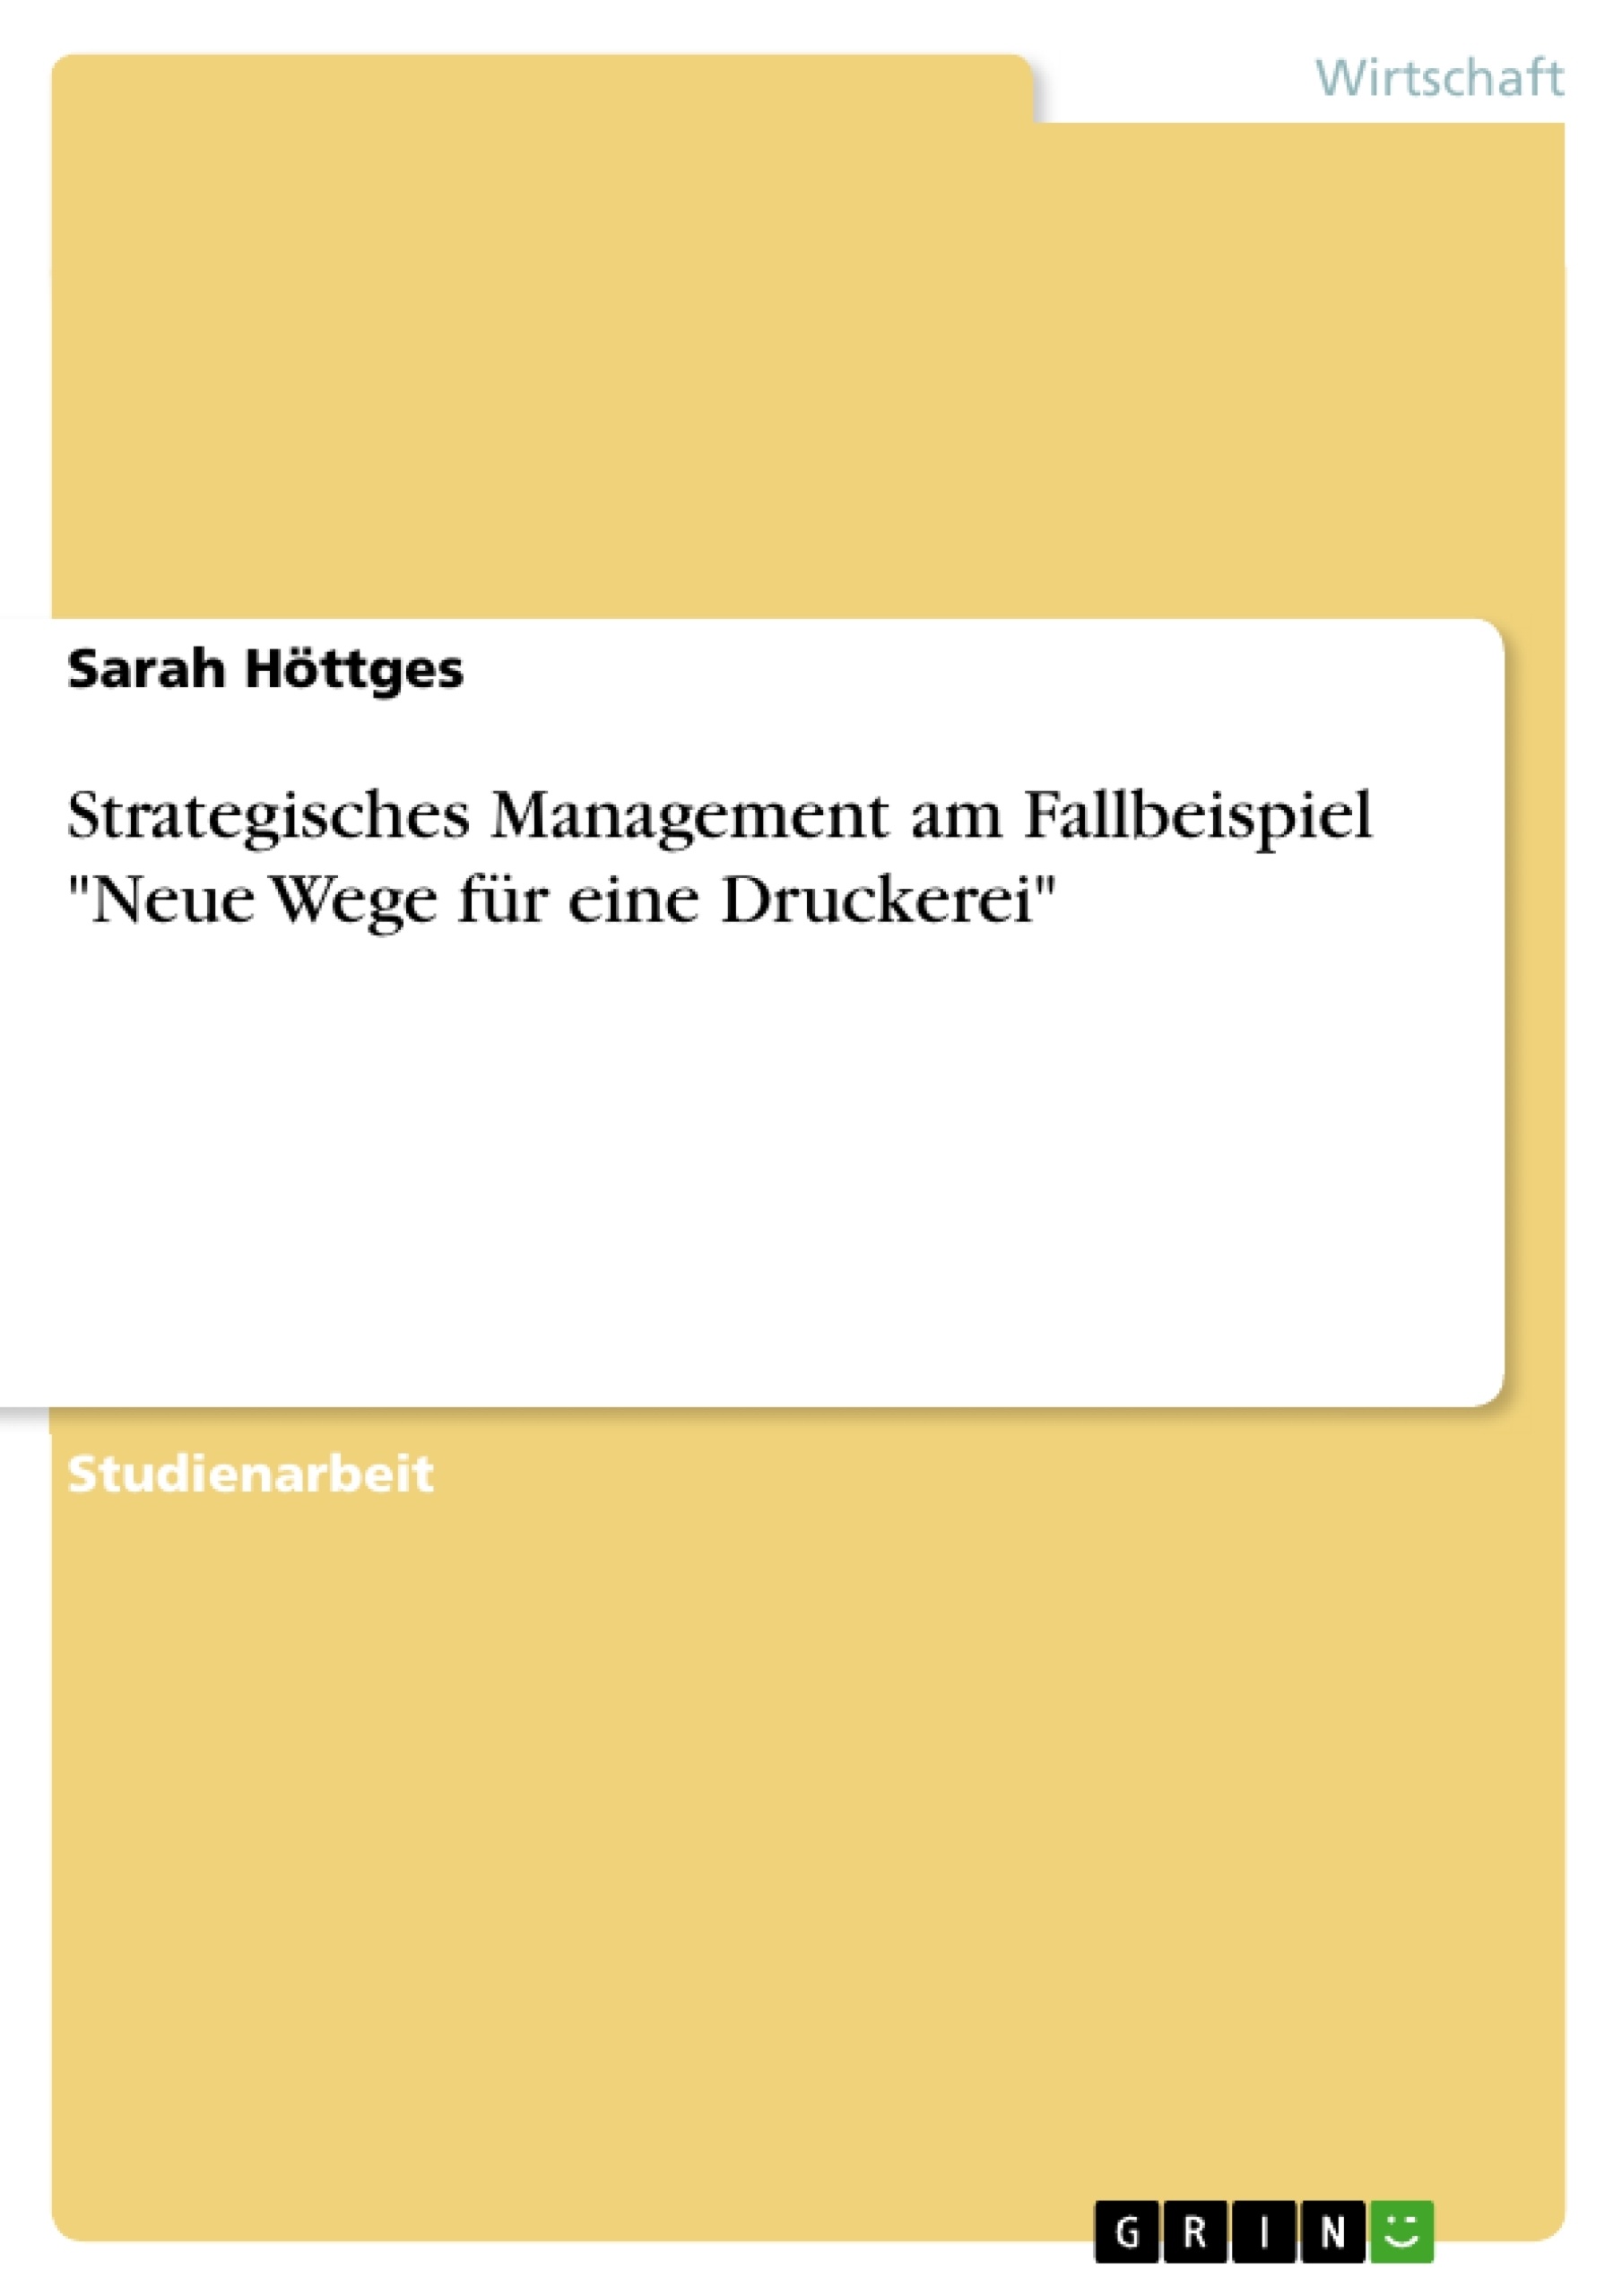 Titel: Strategisches Management am Fallbeispiel "Neue Wege für eine Druckerei"